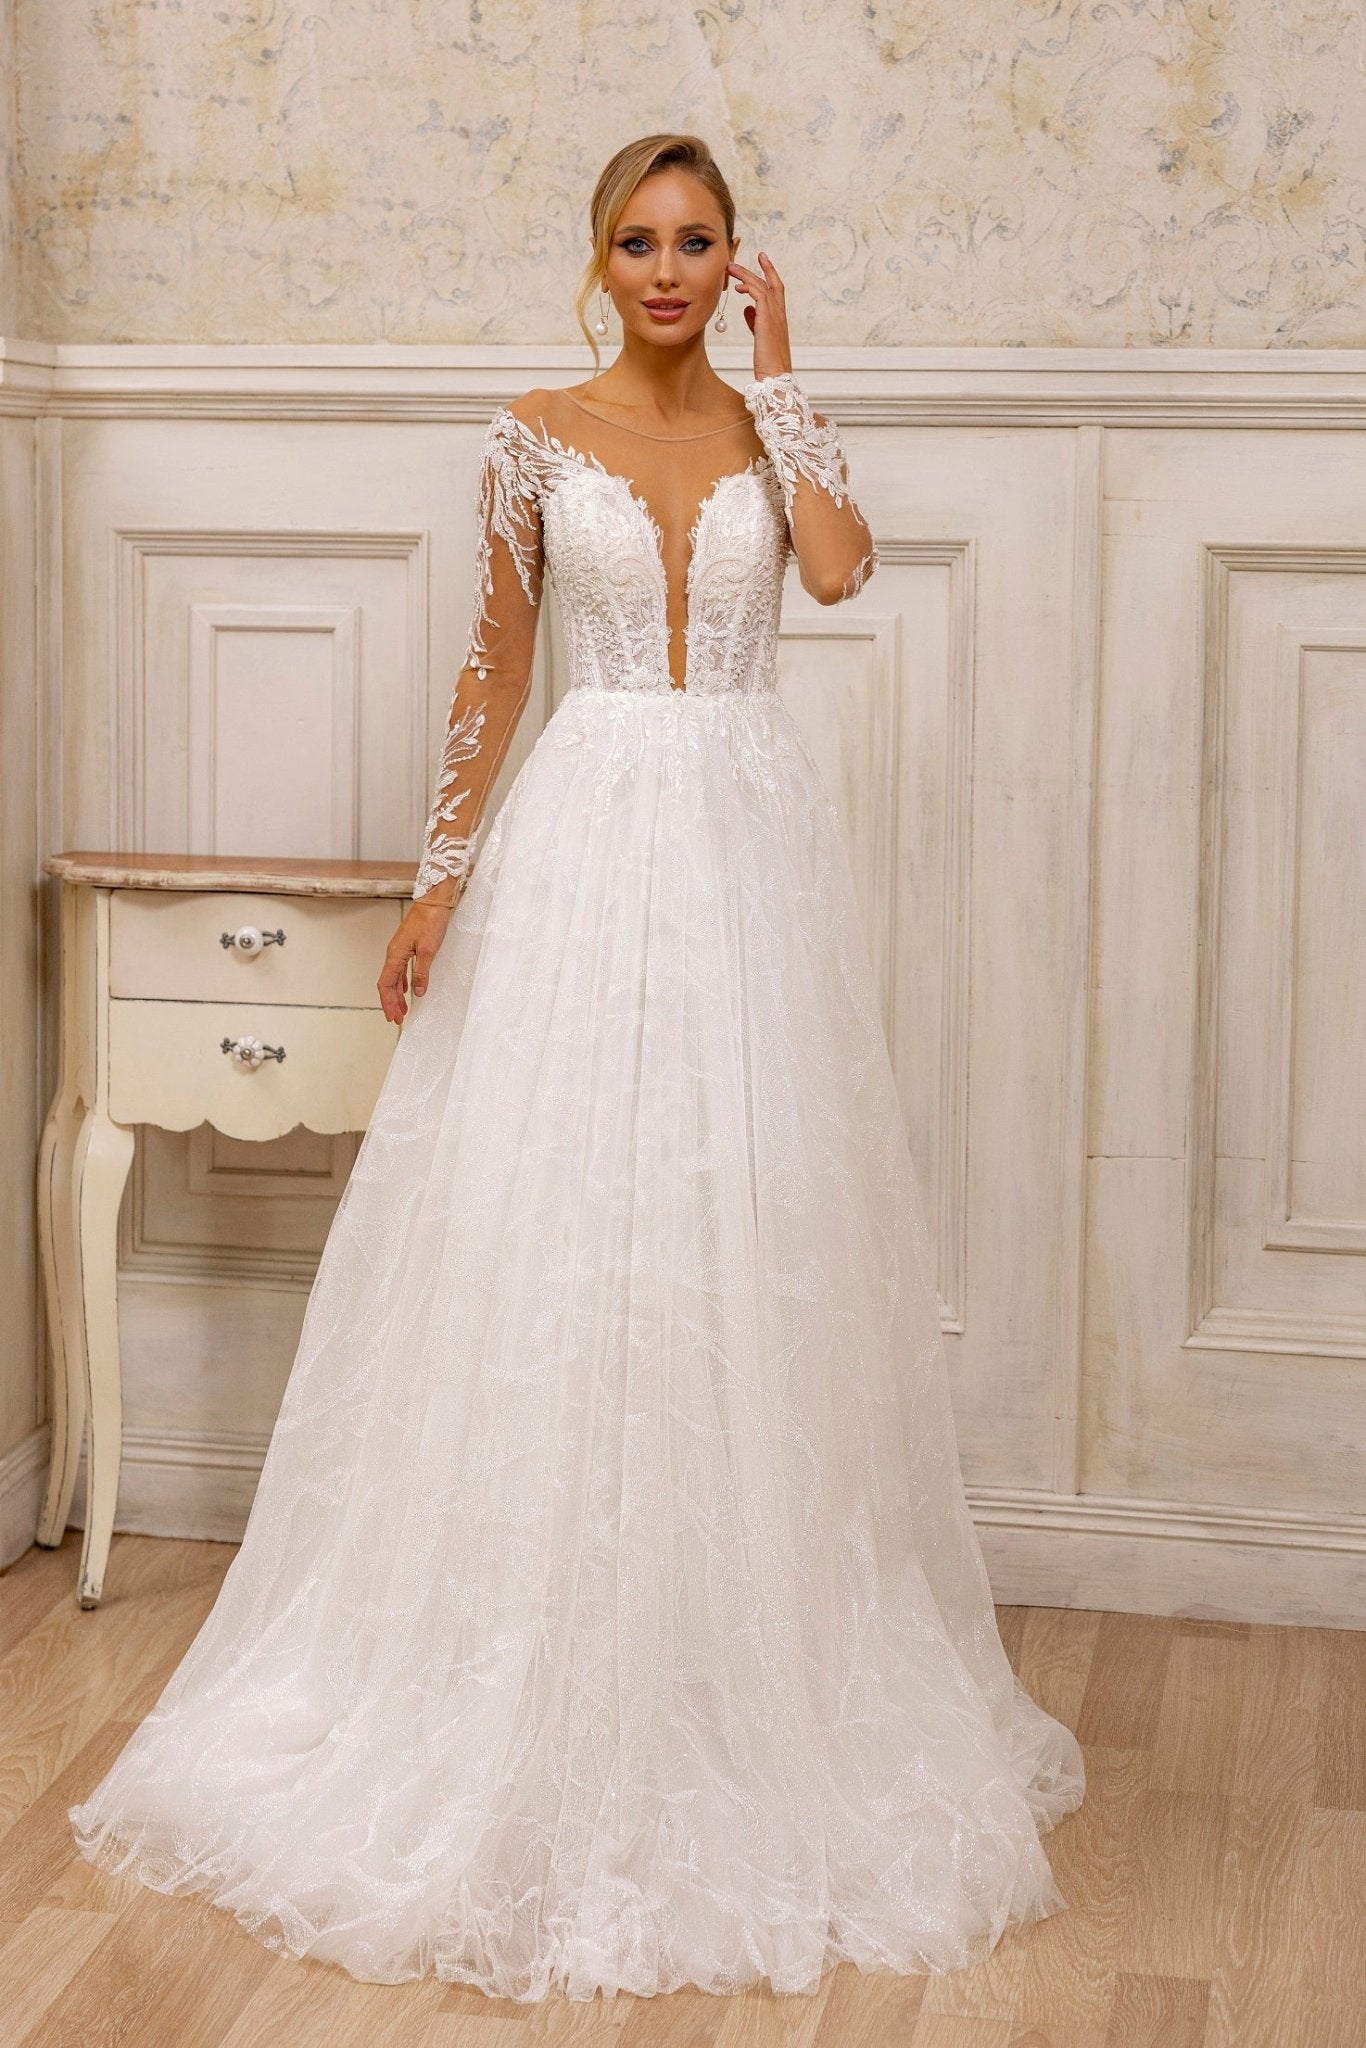 Elegant Sheer-Sleeved Lace A-Line Wedding Dress | V-Neck Bridal Gown with Full Skirt - WonderlandByLilian